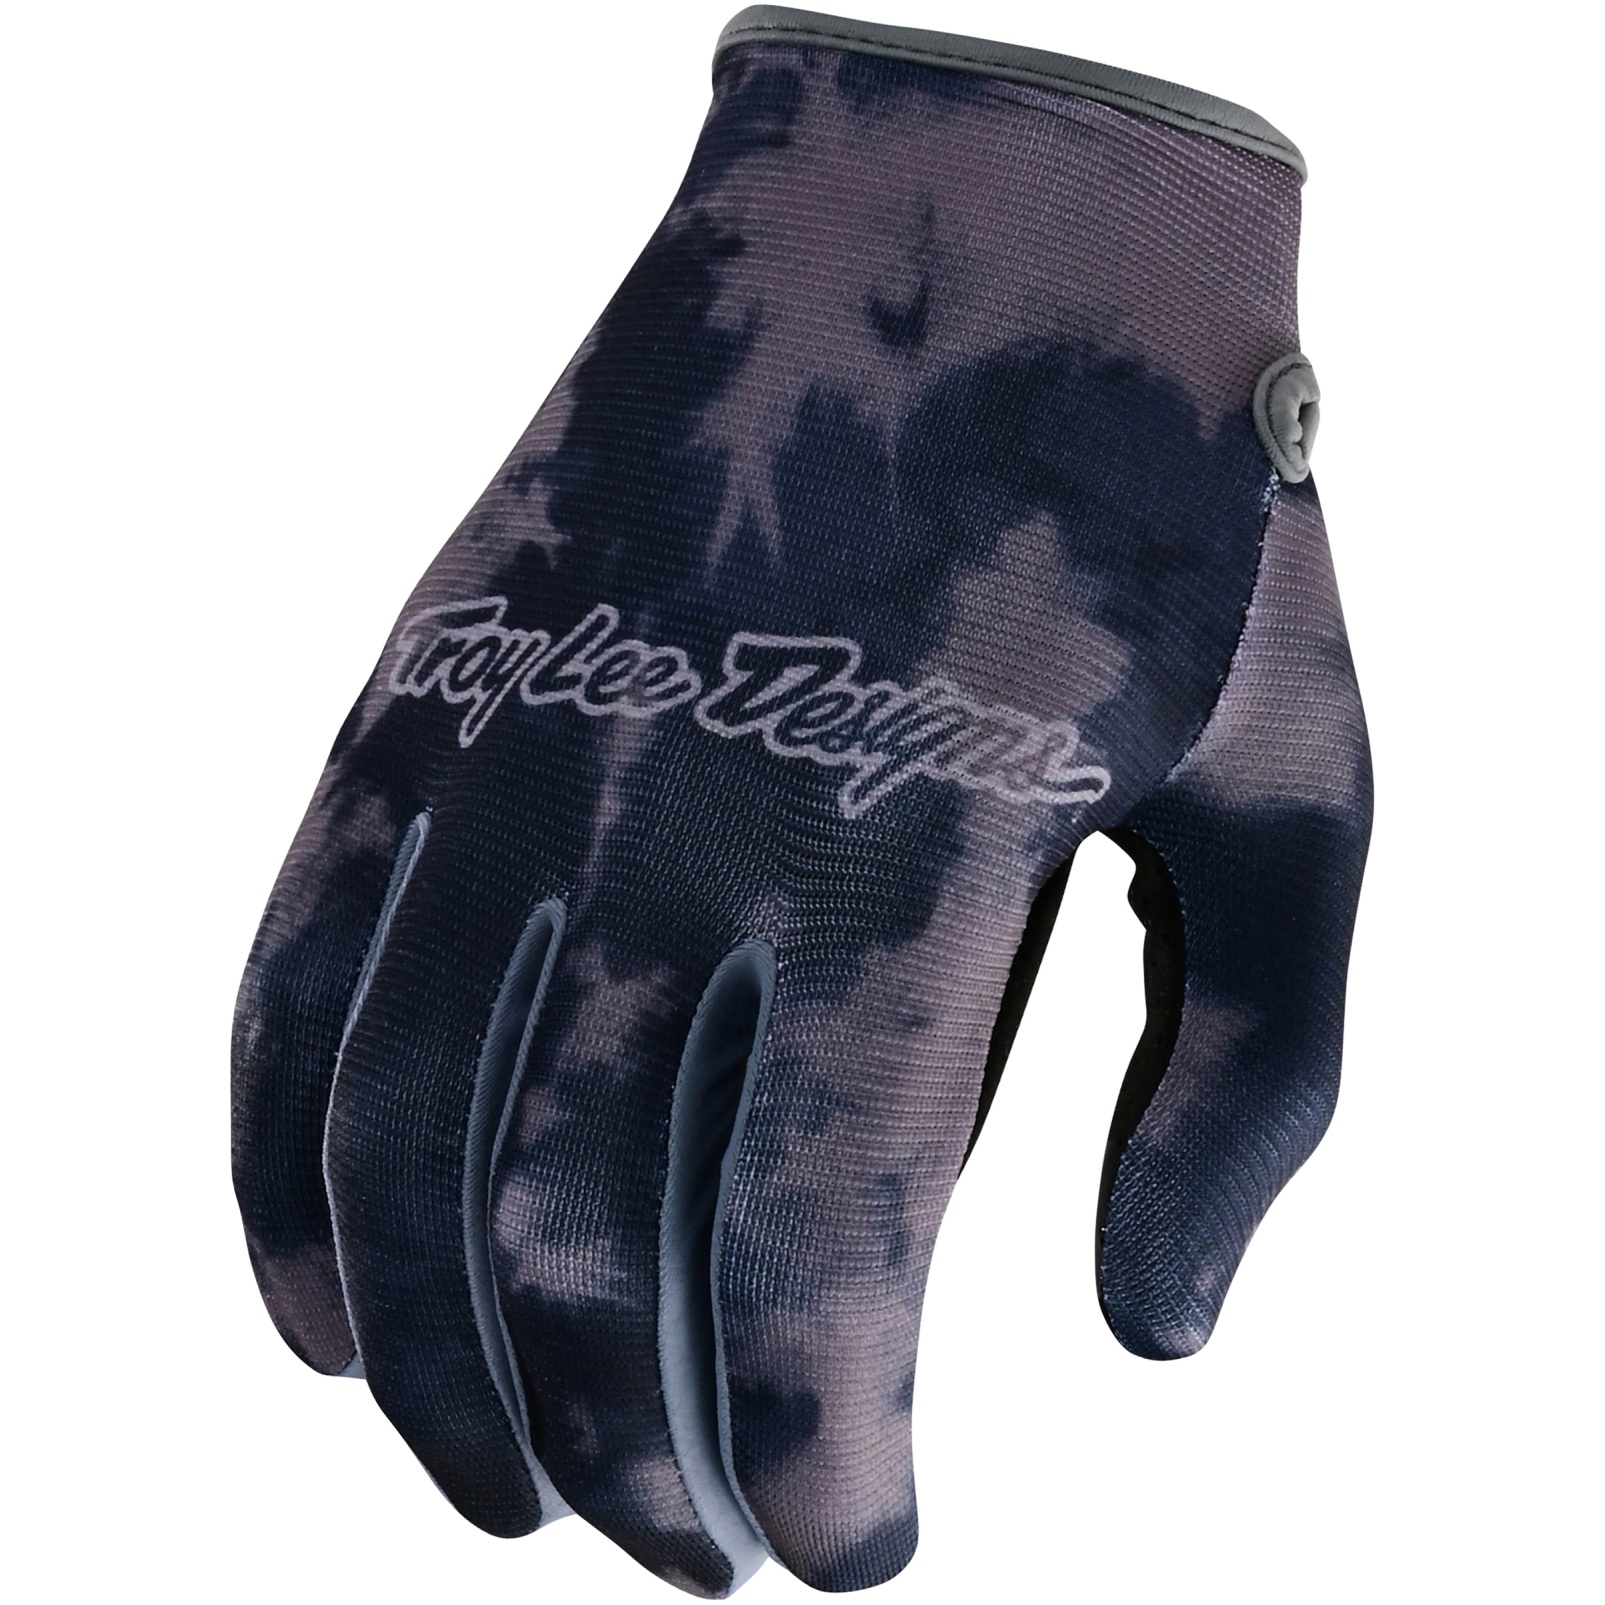 Productfoto van Troy Lee Designs Flowline Handschoenen - Plot Charcoal